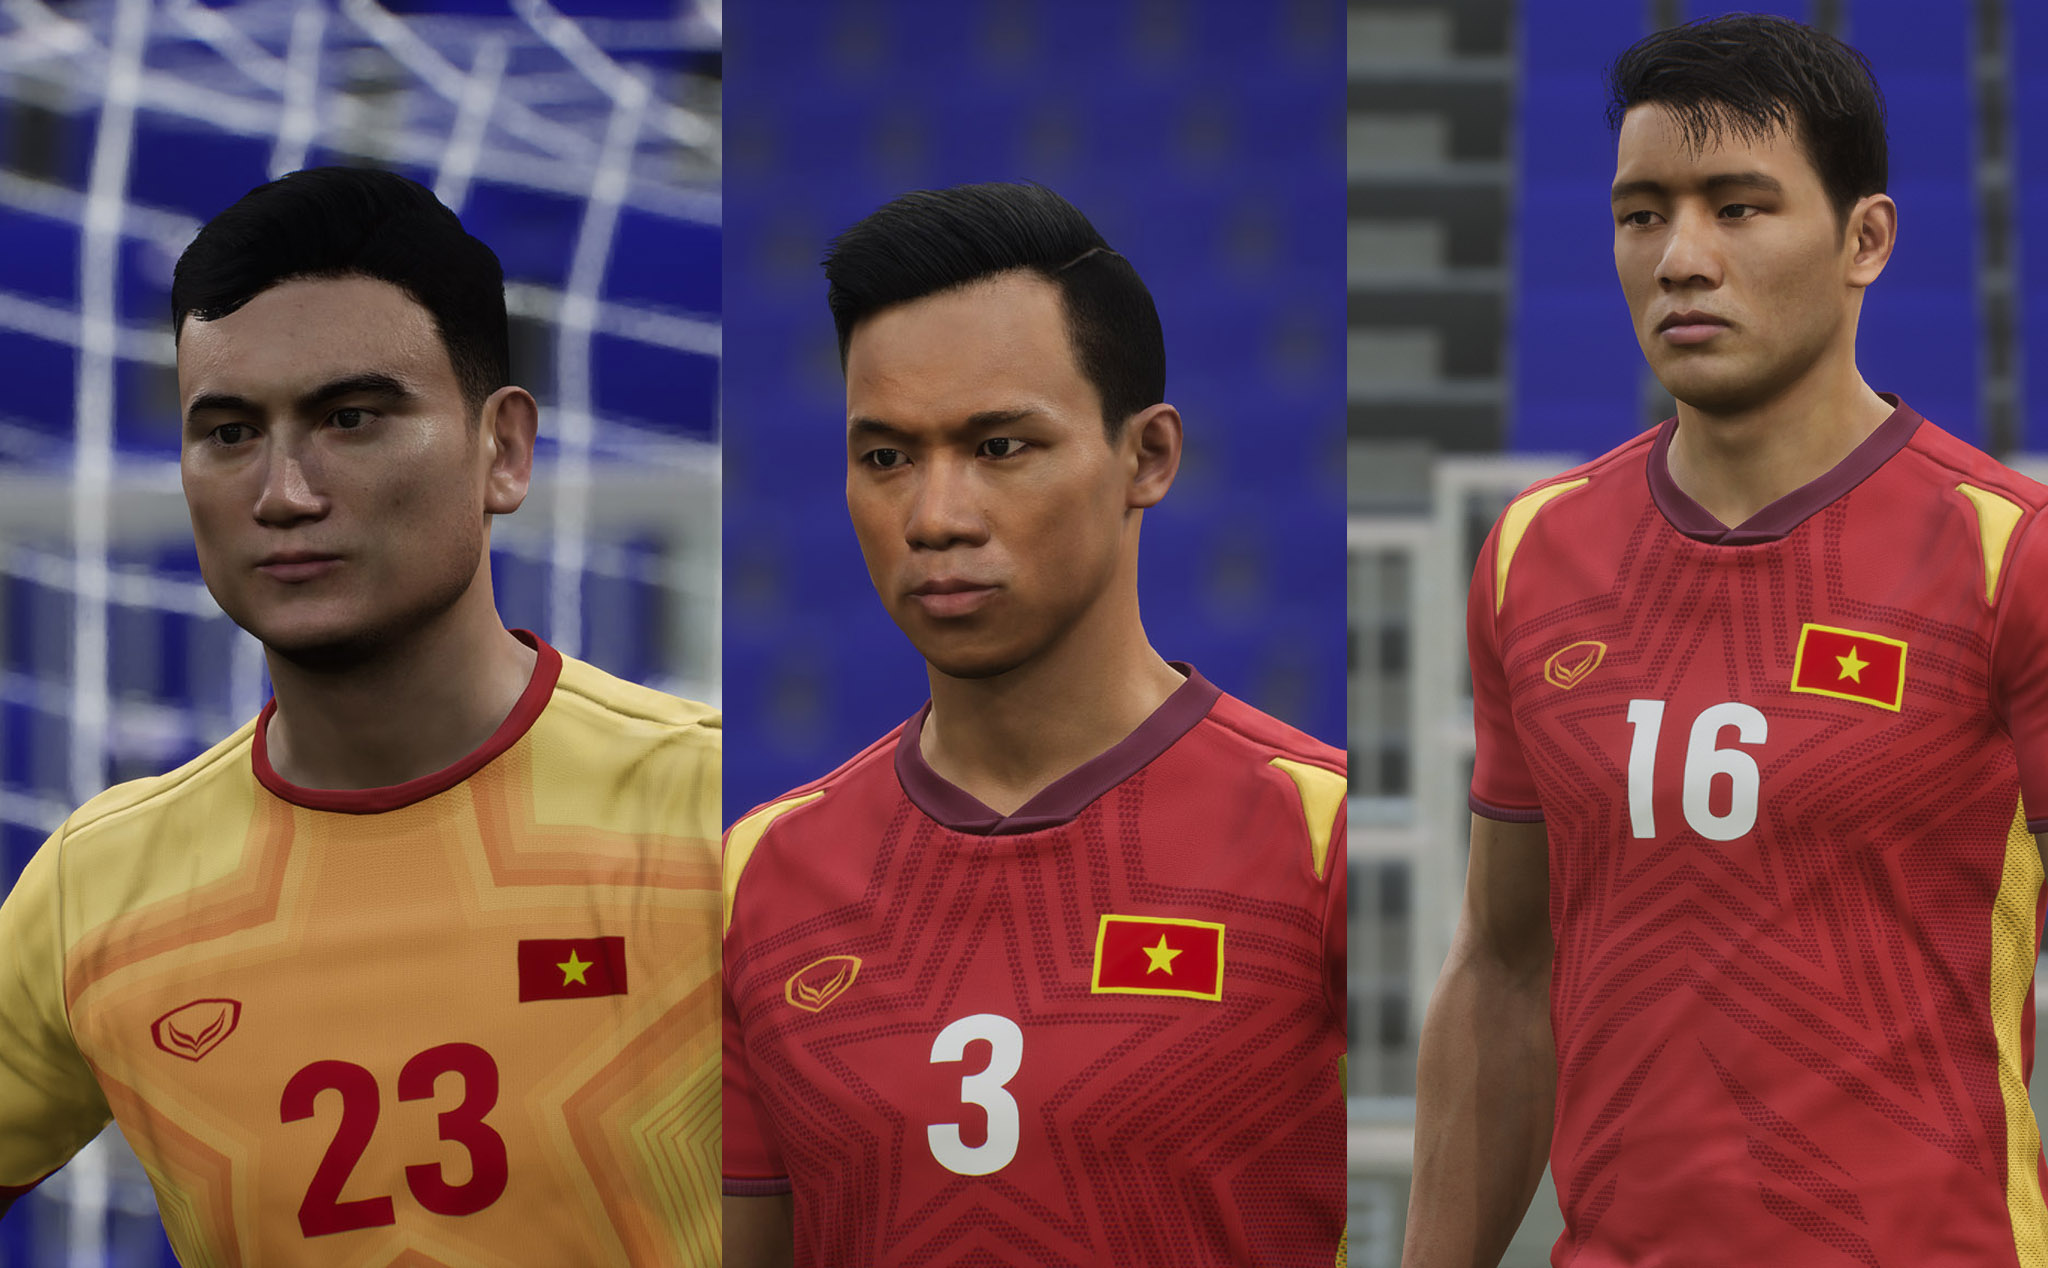 Tuyển Việt Nam vừa ra mắt trong bản cập nhật eFootball 2022, anh em có thấy giống không?